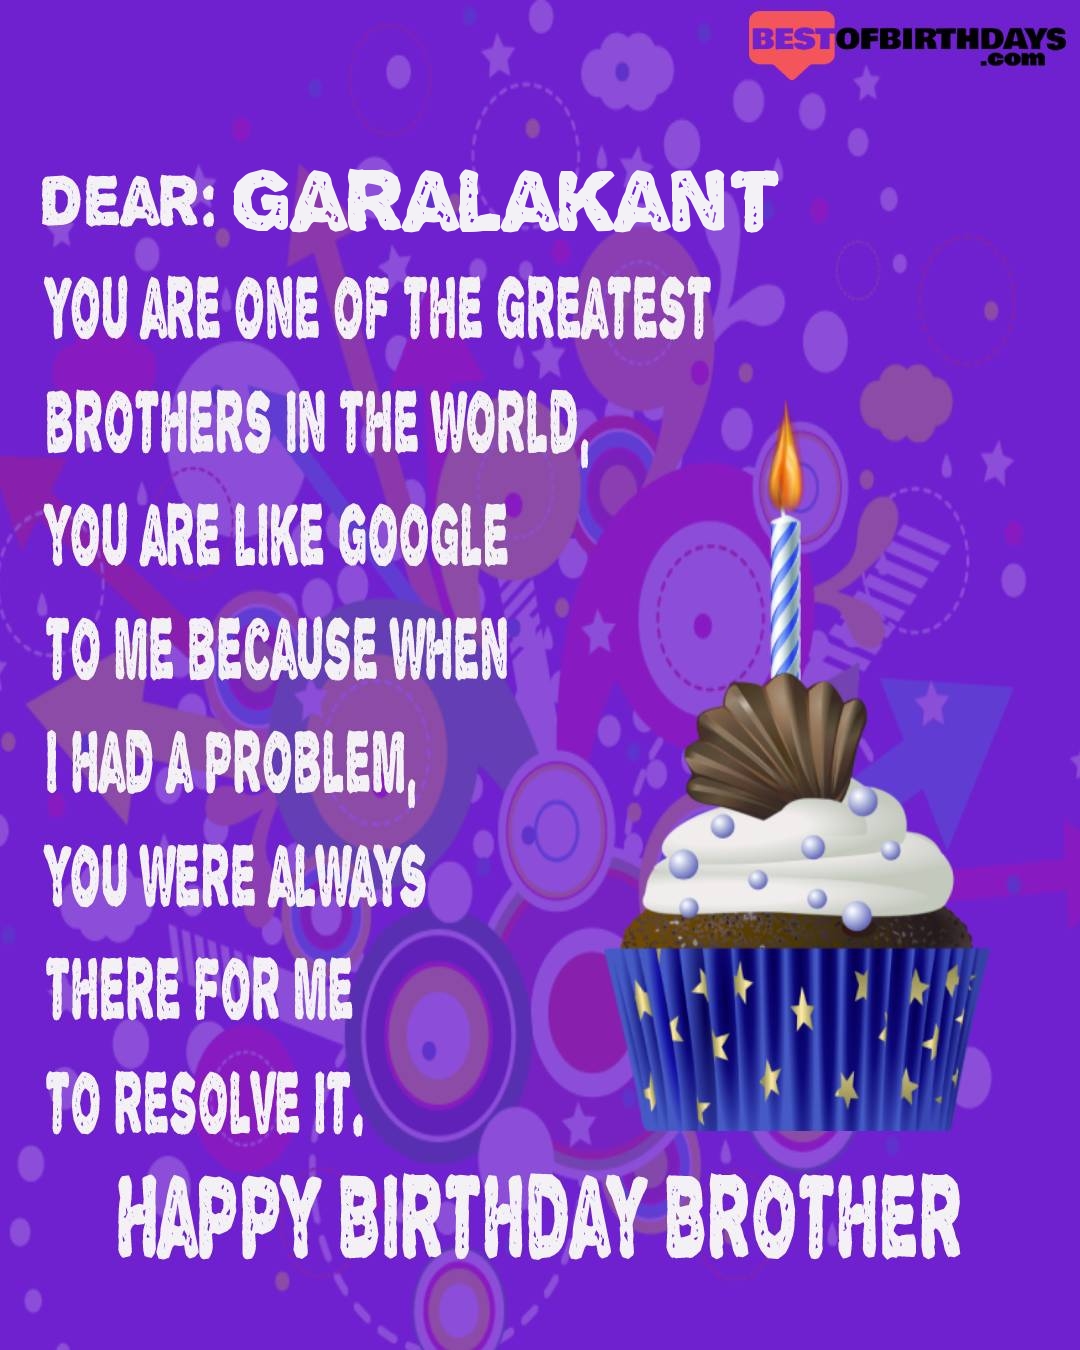 Happy birthday garalakant bhai brother bro